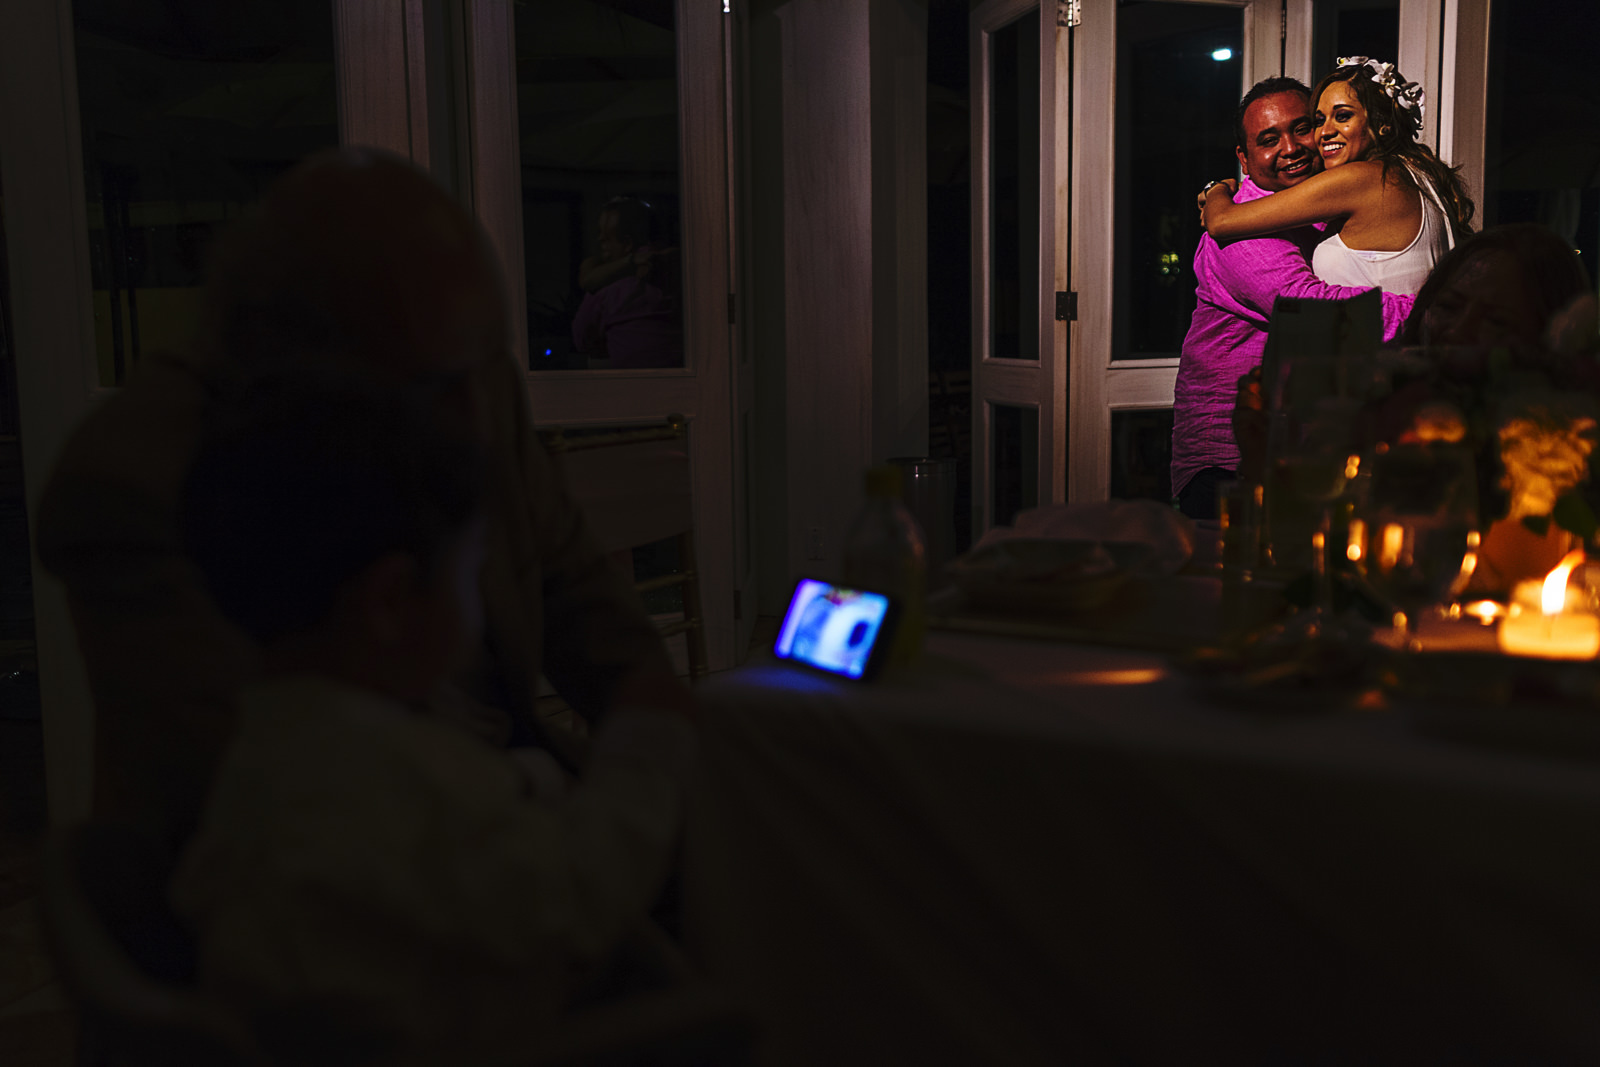 Pareja en su primer baile en la recepción de la boda mientras su hijo mira videos en un teléfono celular